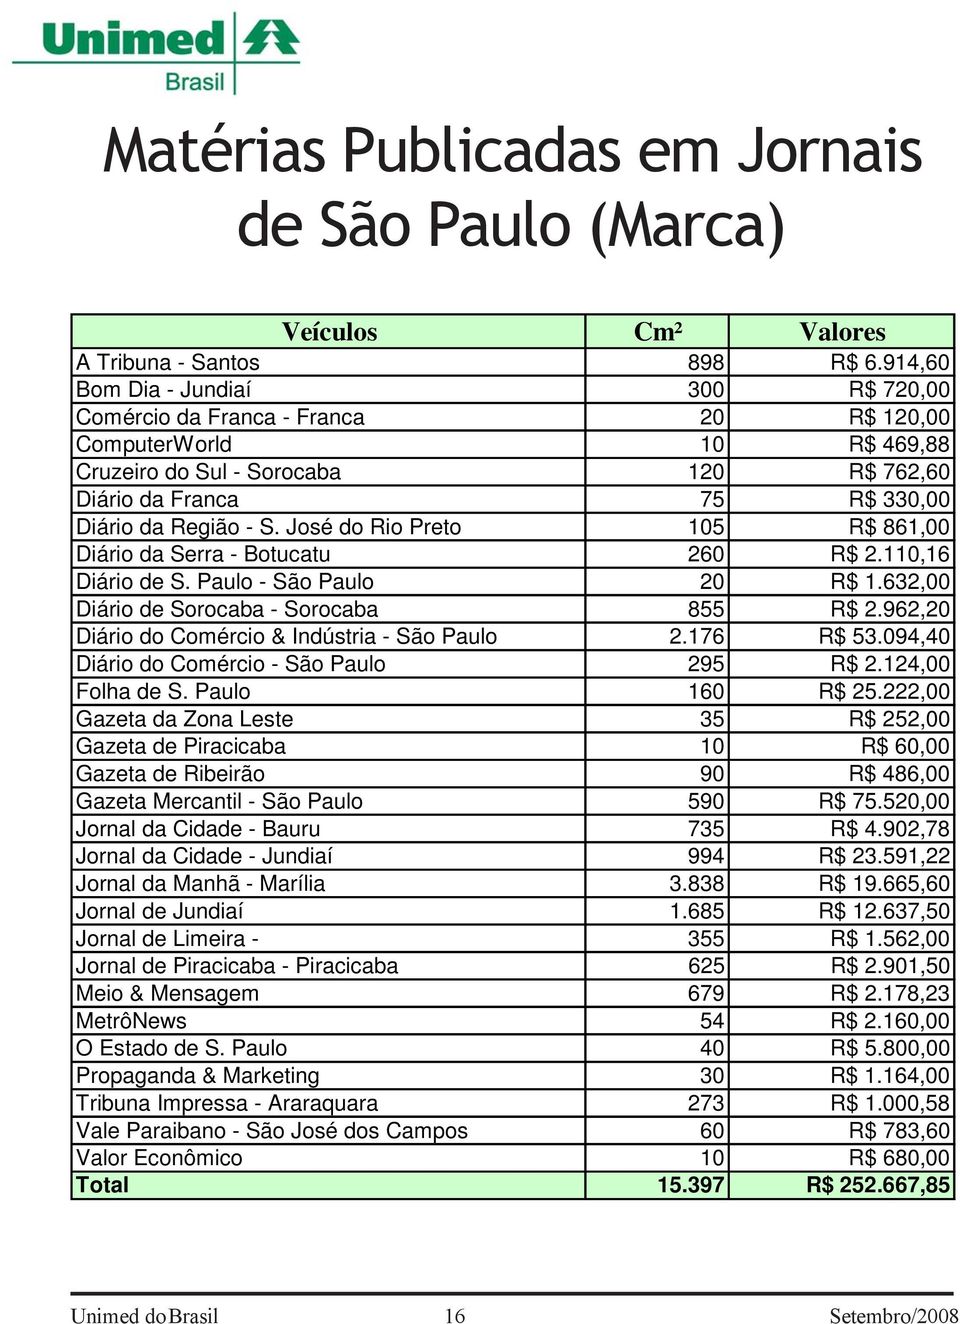 José do Rio Preto 105 R$ 861,00 Diário da Serra - Botucatu 260 R$ 2.110,16 Diário de S. Paulo - São Paulo 20 R$ 1.632,00 Diário de Sorocaba - Sorocaba 855 R$ 2.